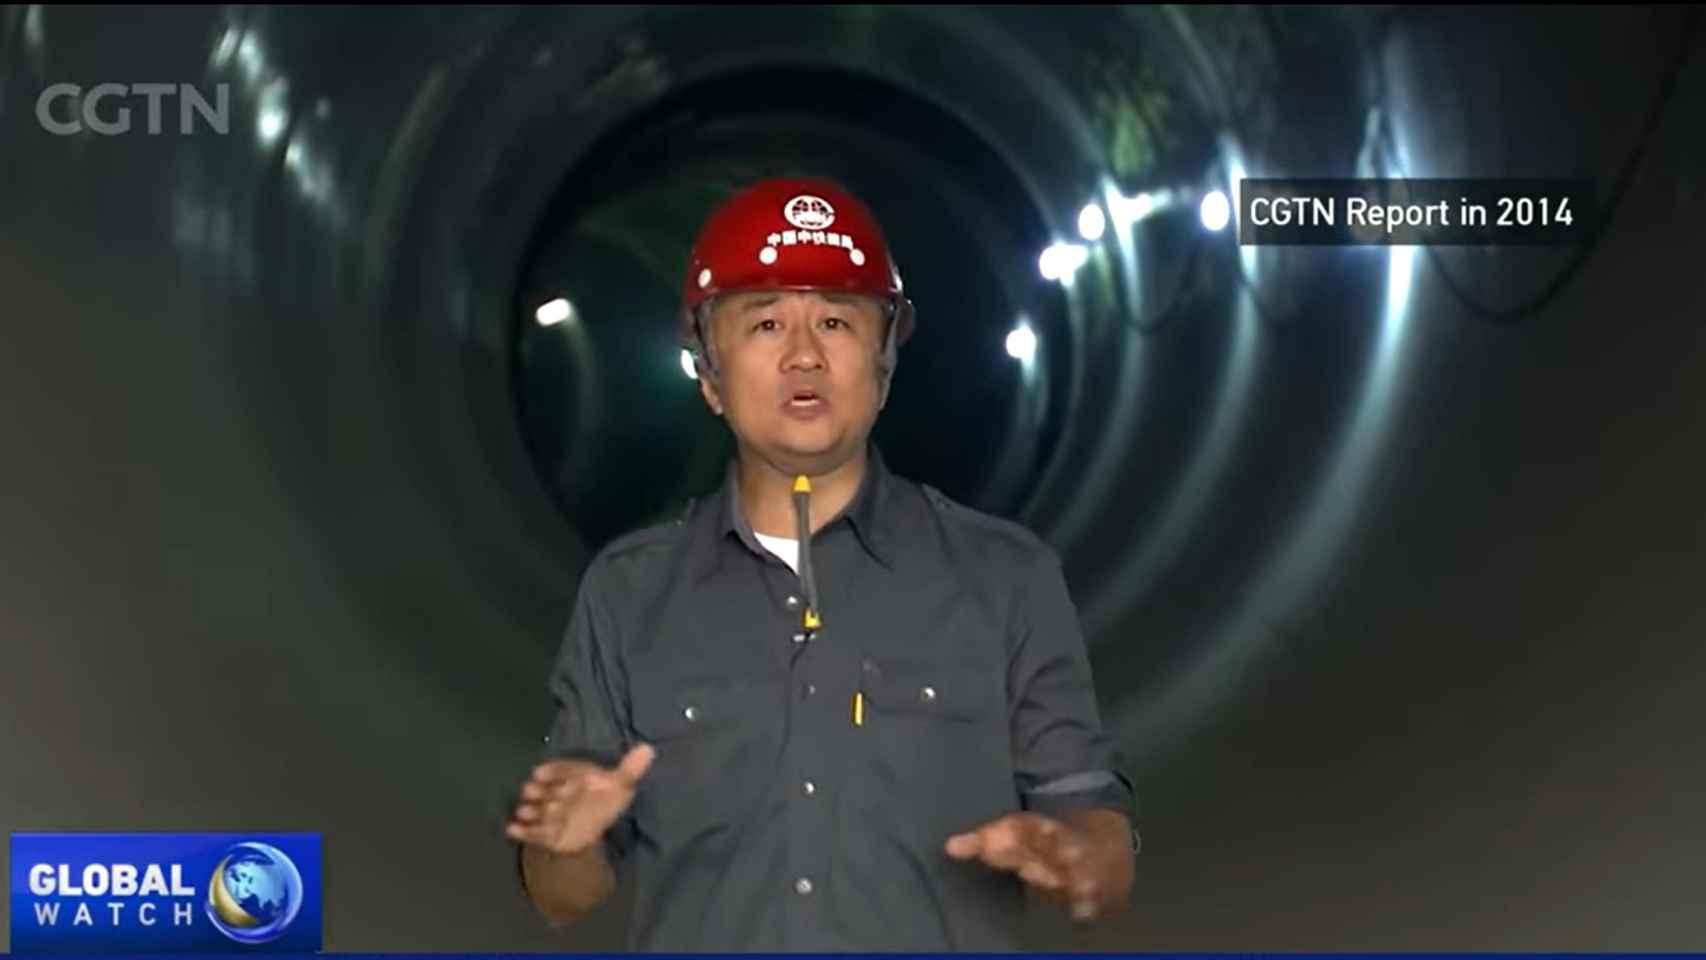 Interior del túnel llegando a Pekín